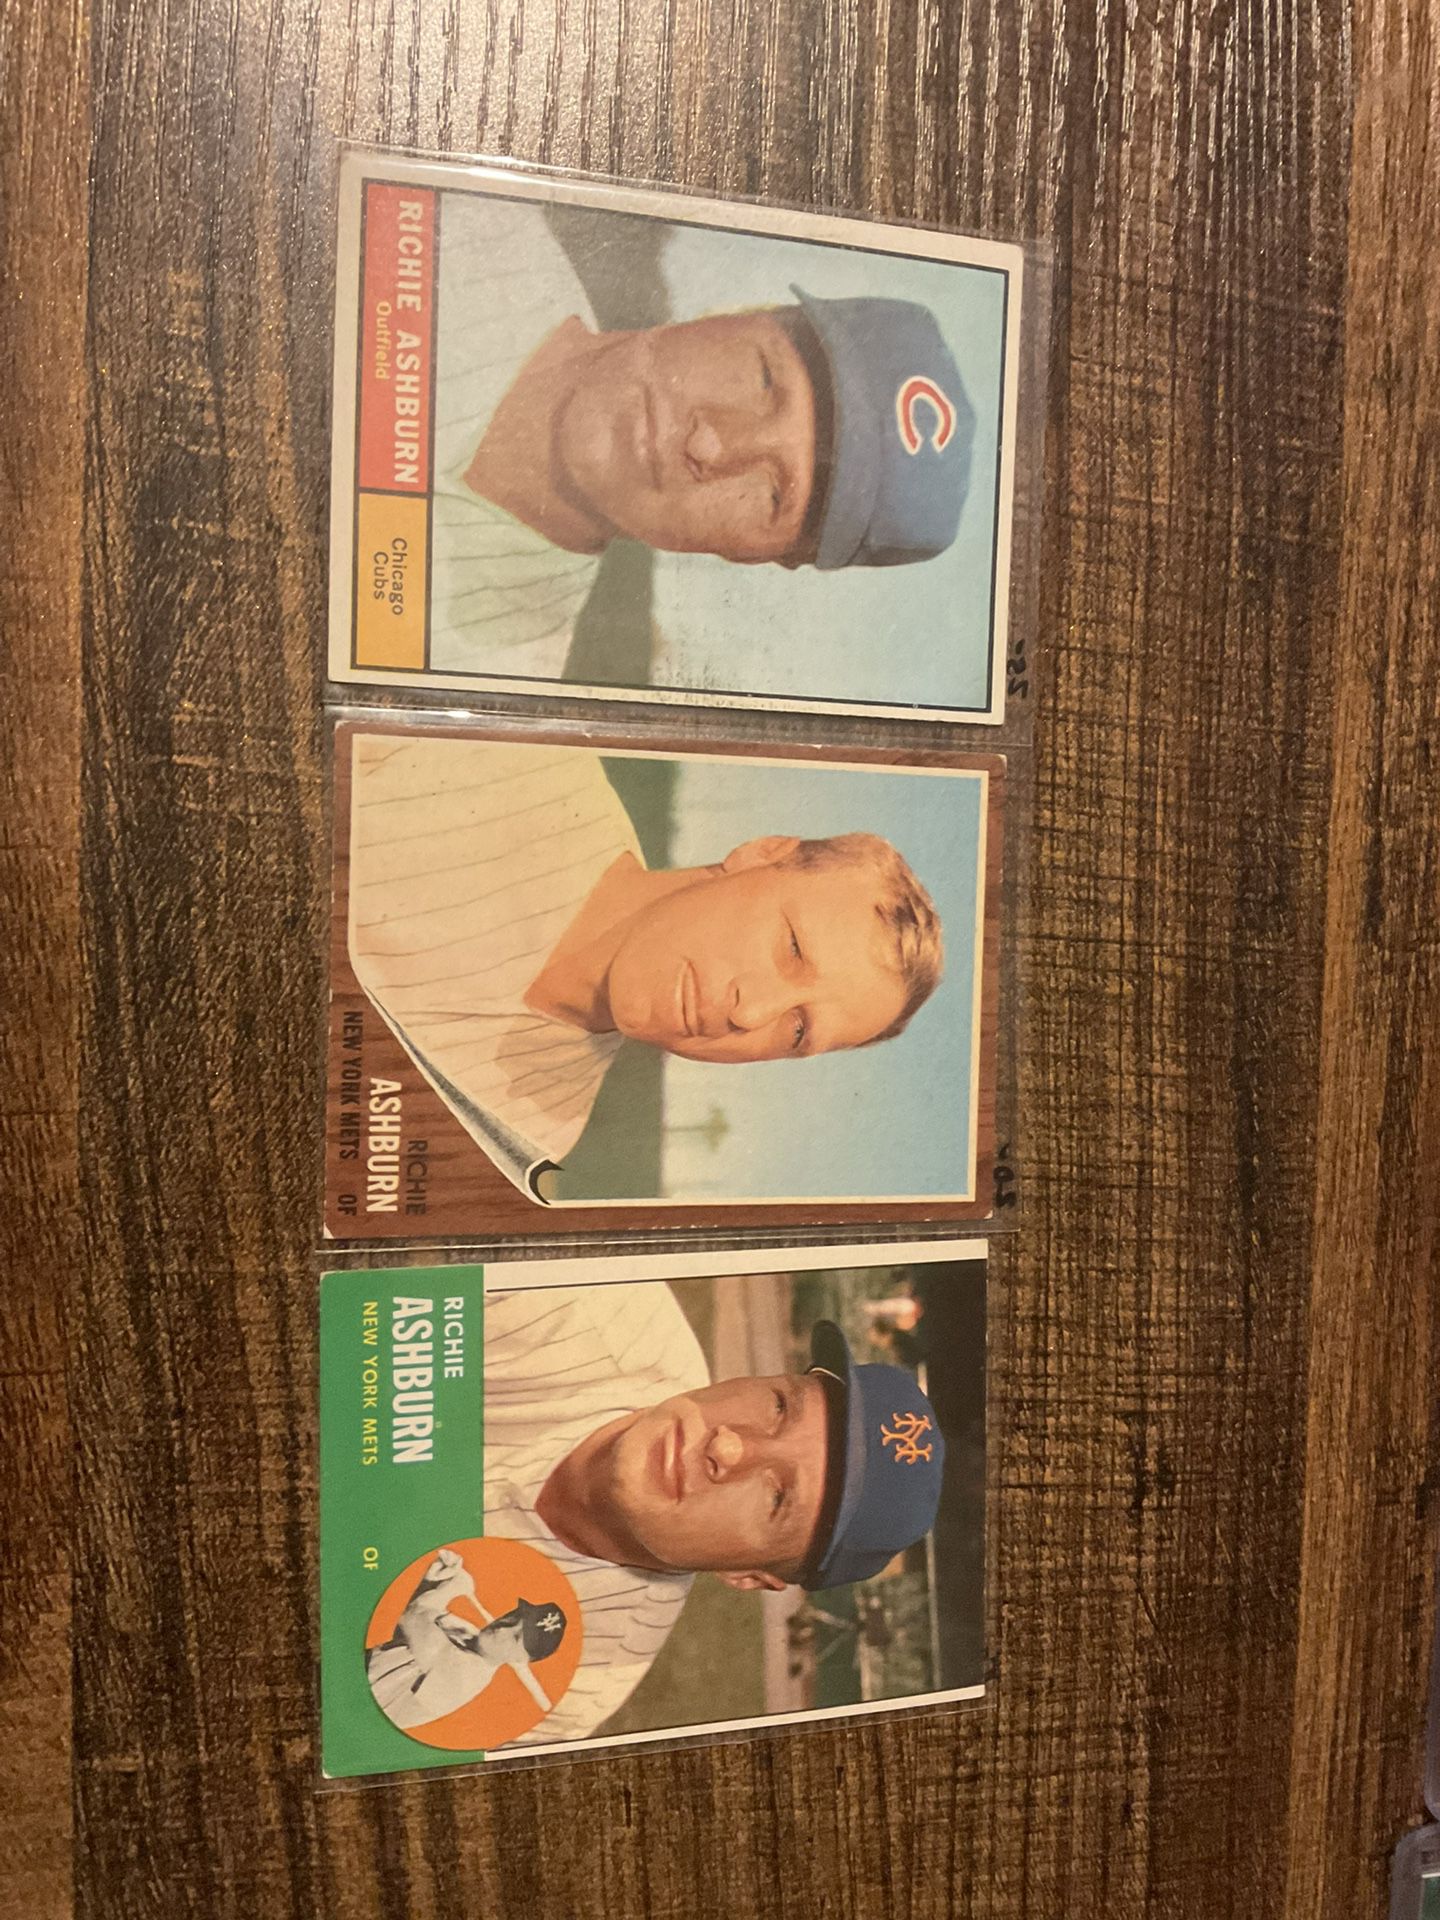 3 Topps Richie Ashburn Baseball Cards (1961,1962,1963) Philadelphia Phillies Legend HOF HBV $95